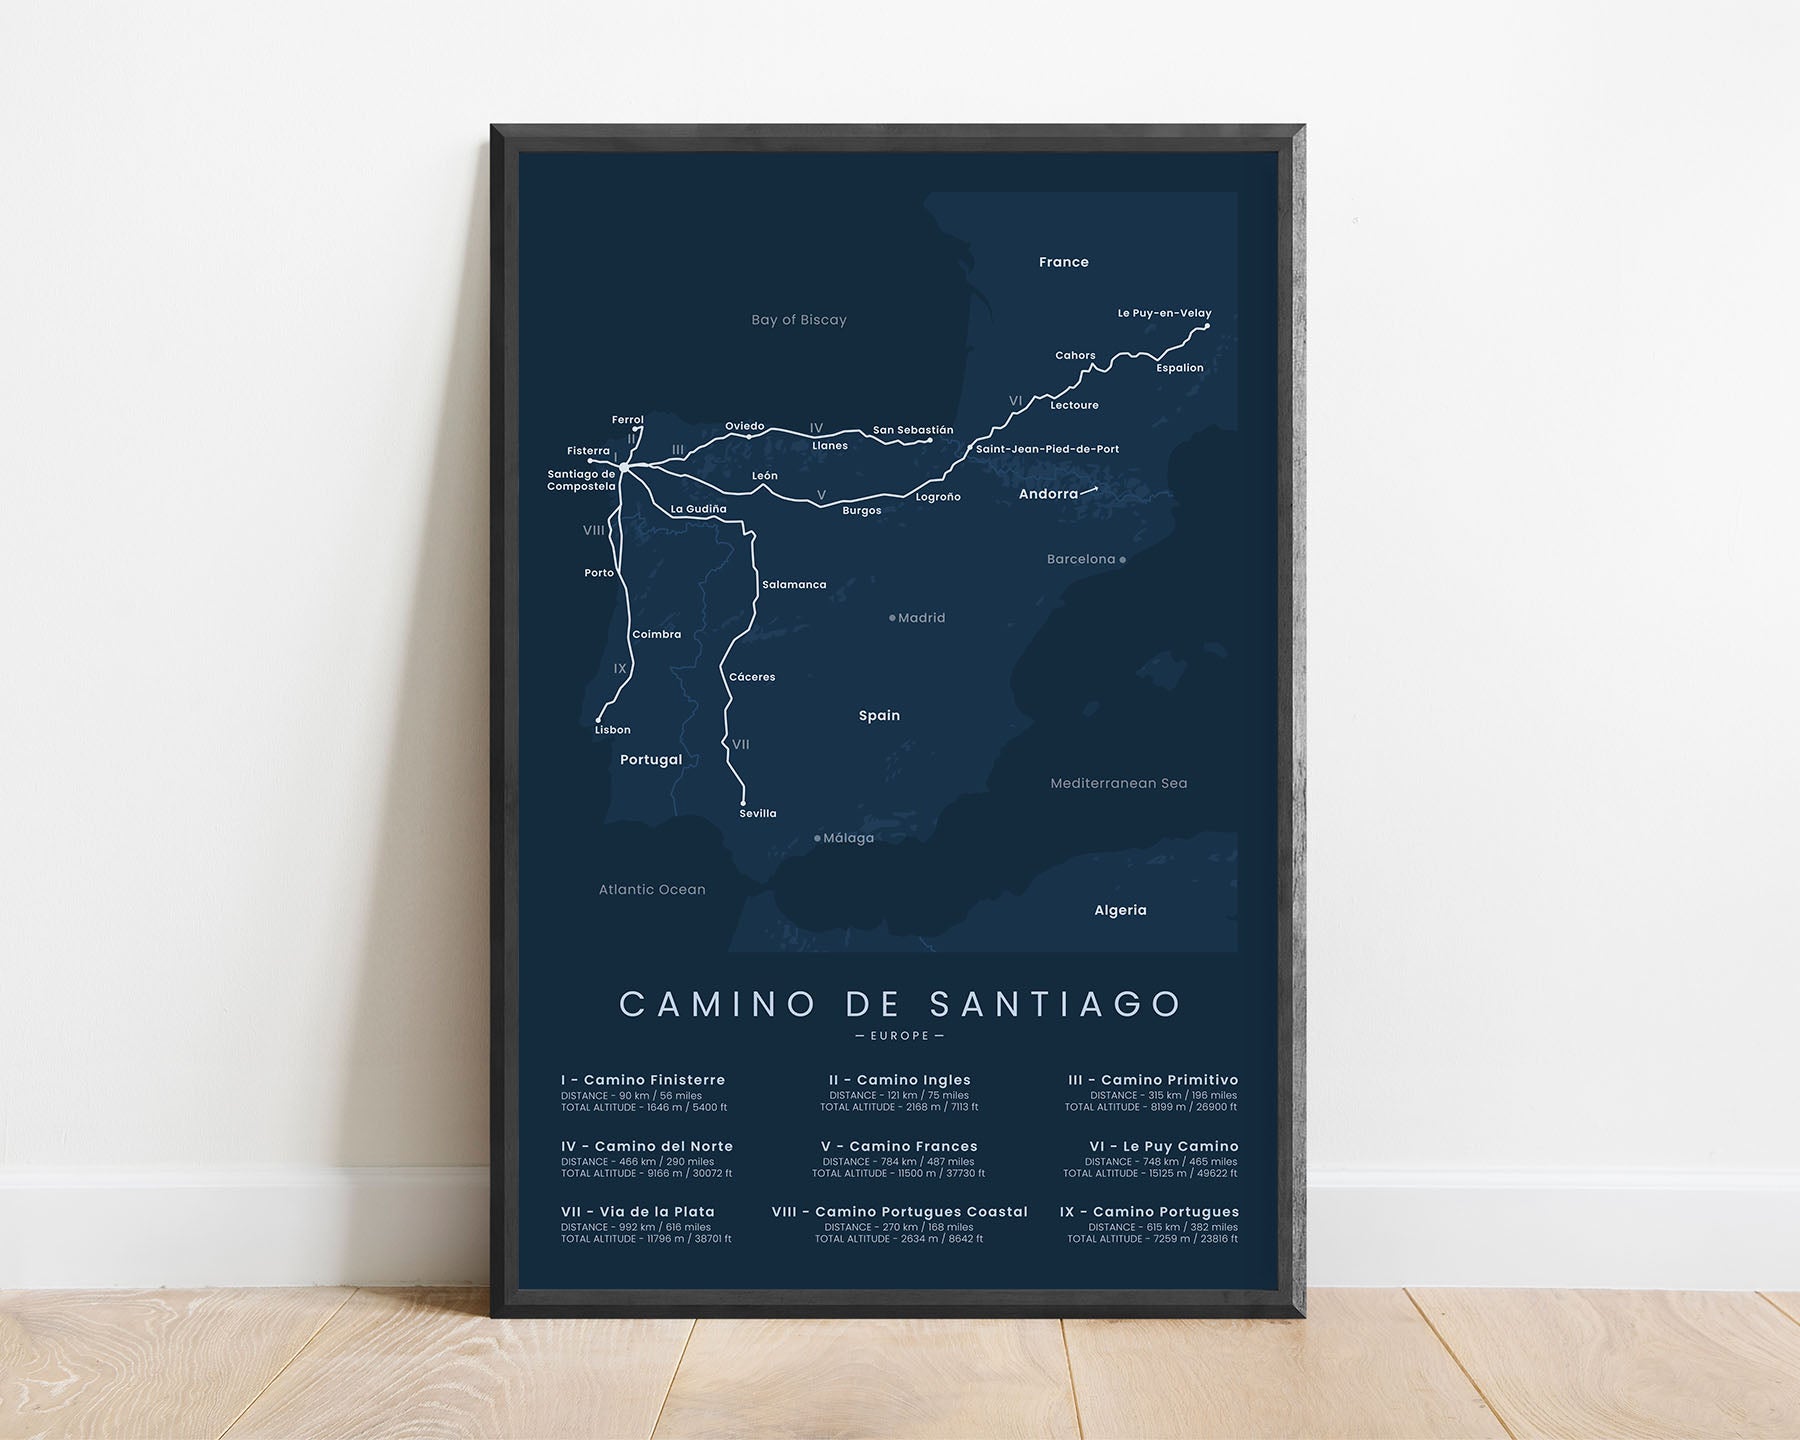 Camino de Santiago (Camino Frances) thru hike map art with blue background